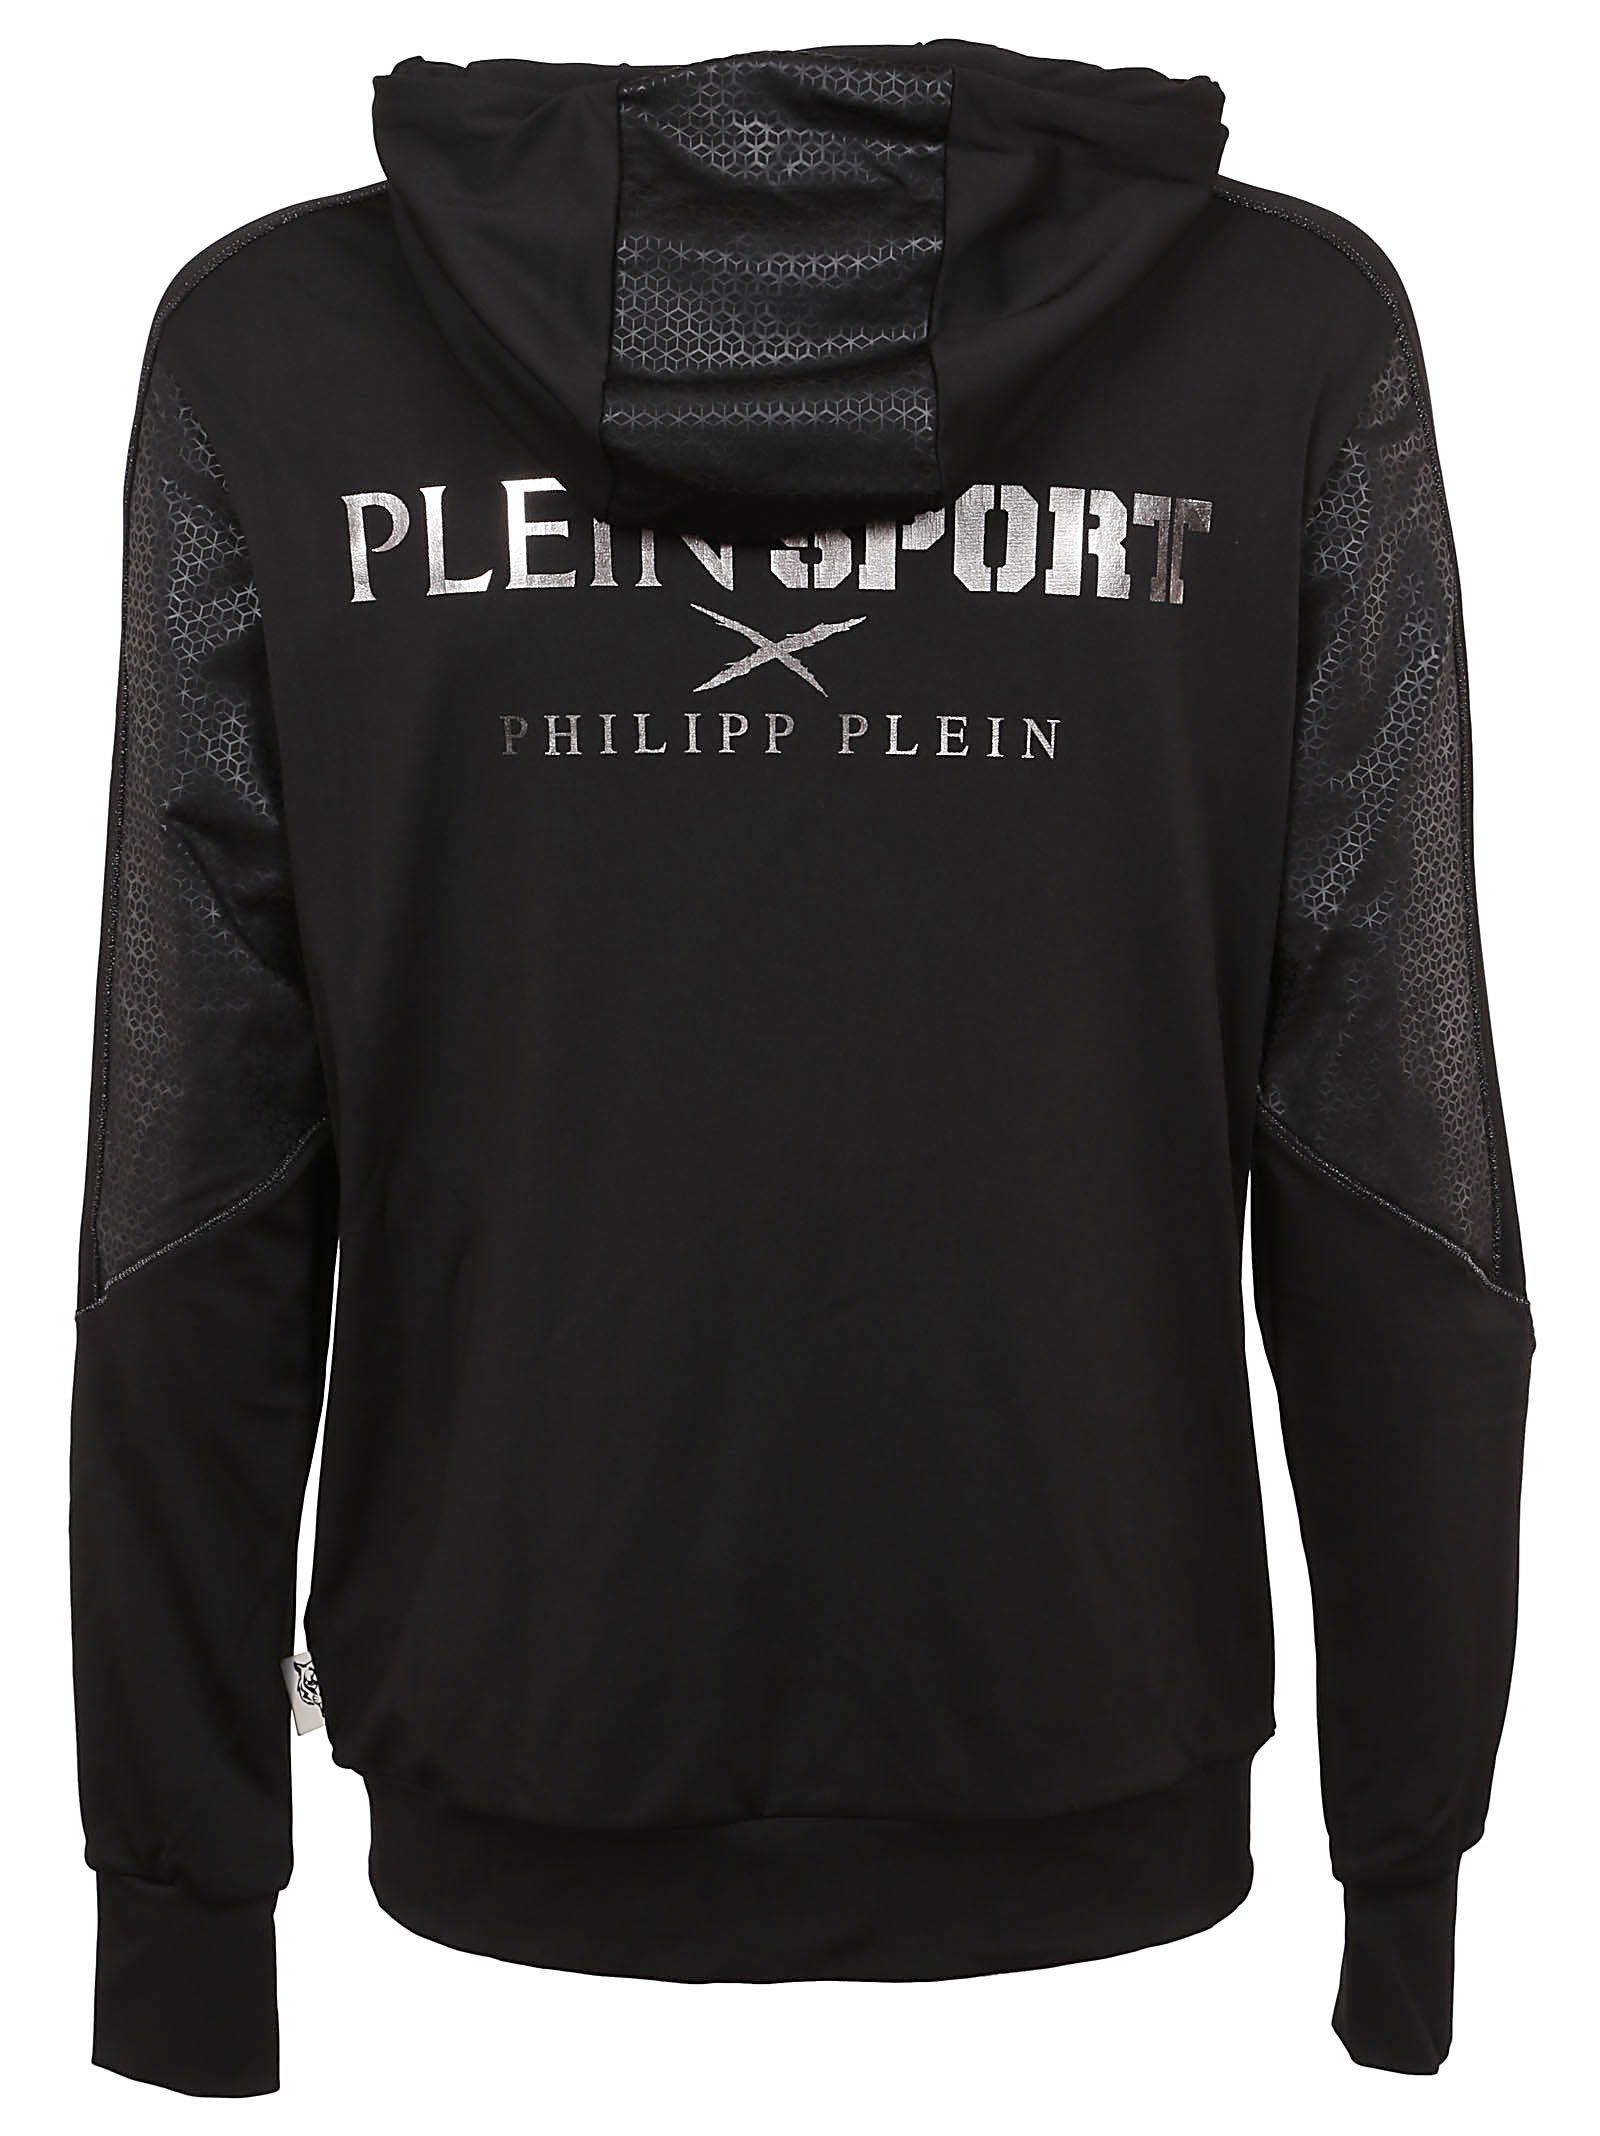 italist | Best price in the market for Philipp Plein Plein Sport ...